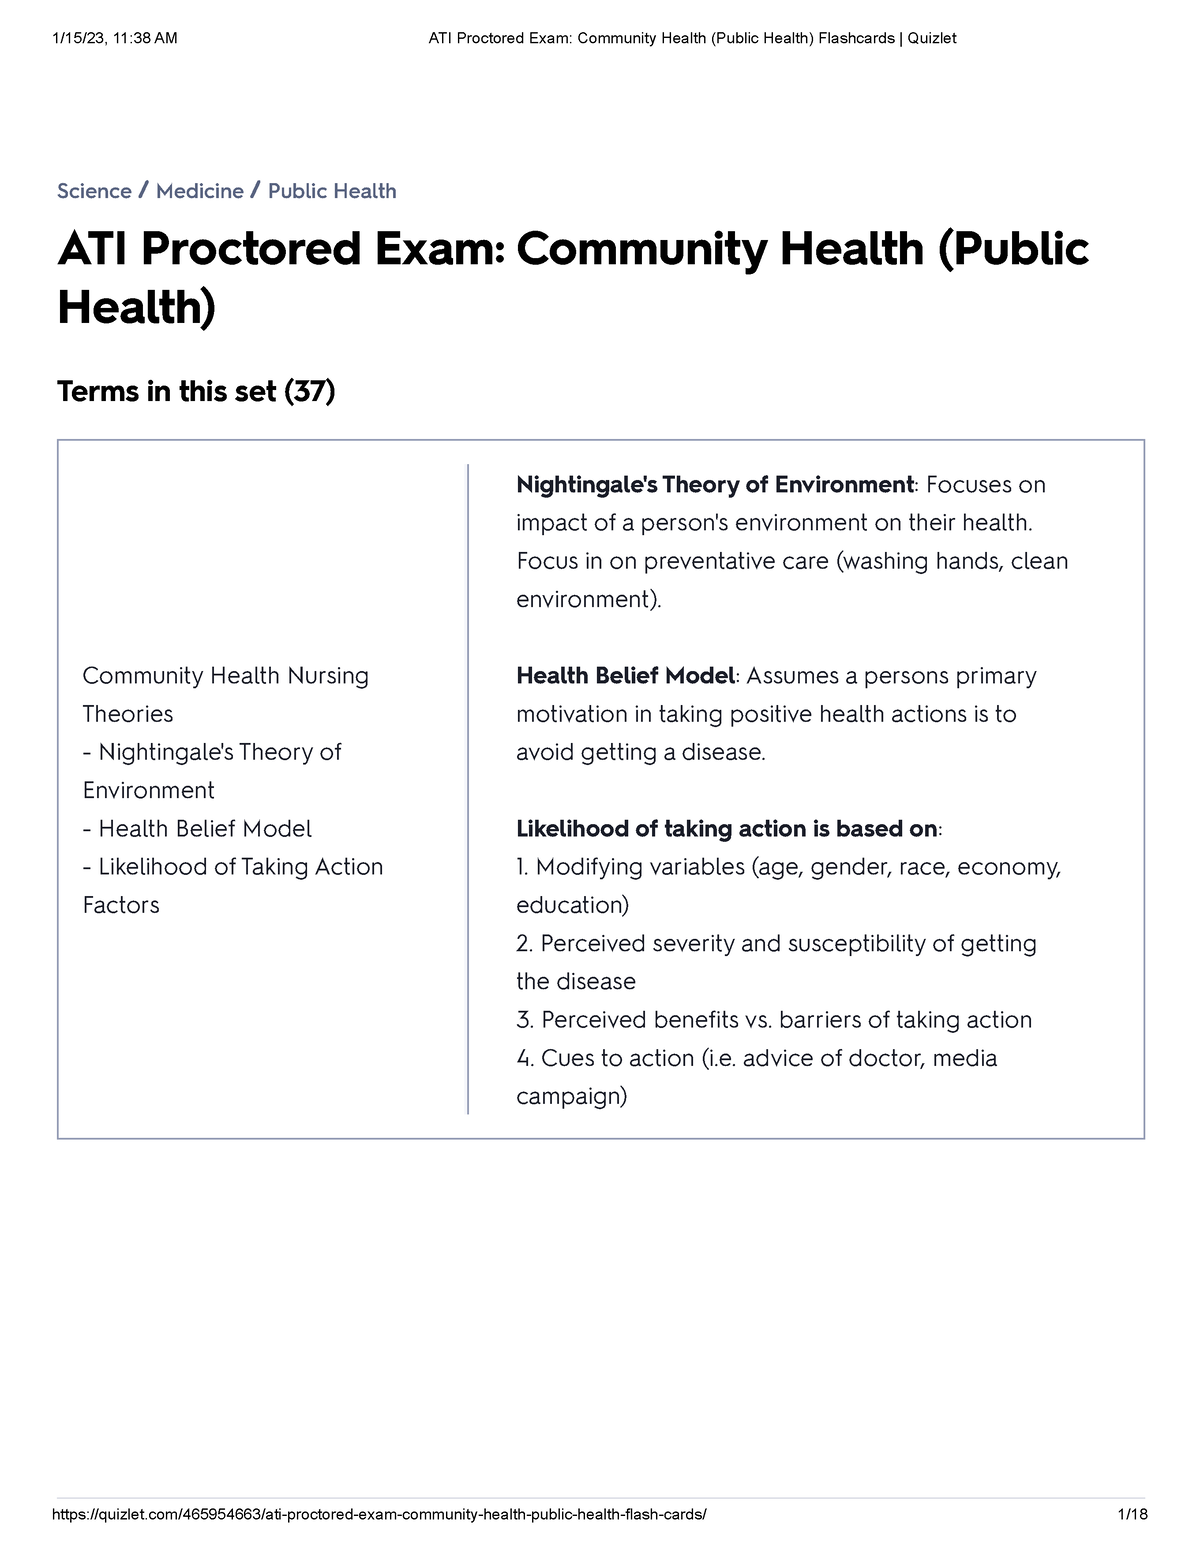 ATI Proctored ATI Flashcards Quizlet ATI Proctored Exam Community